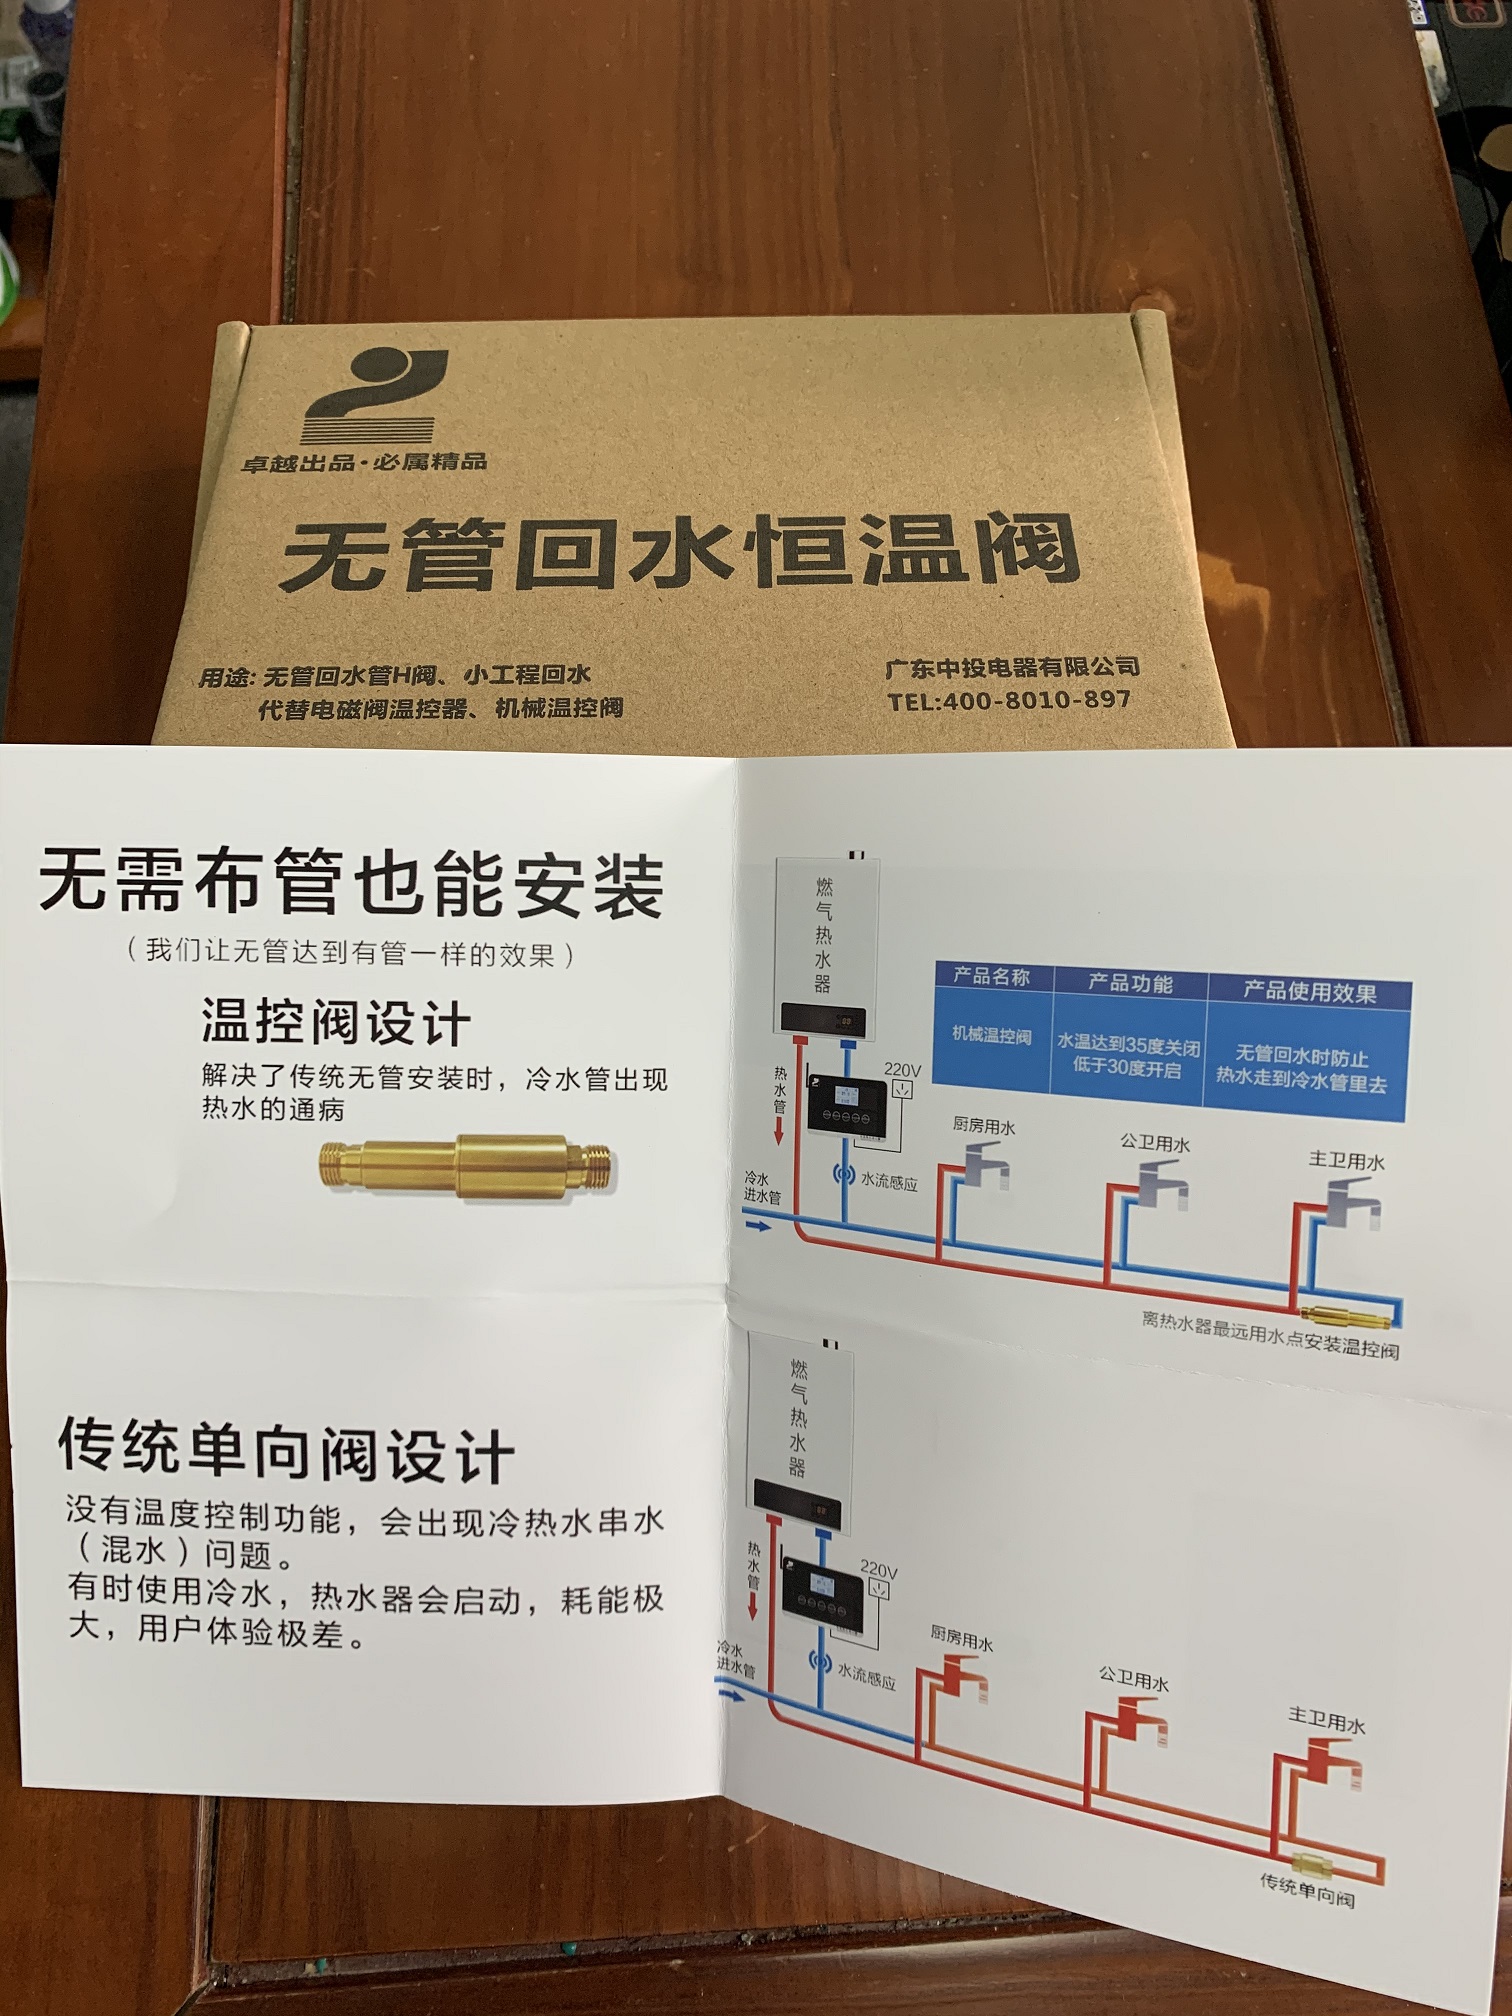 热水器热水回水器速达器-广东中投电器有限公司